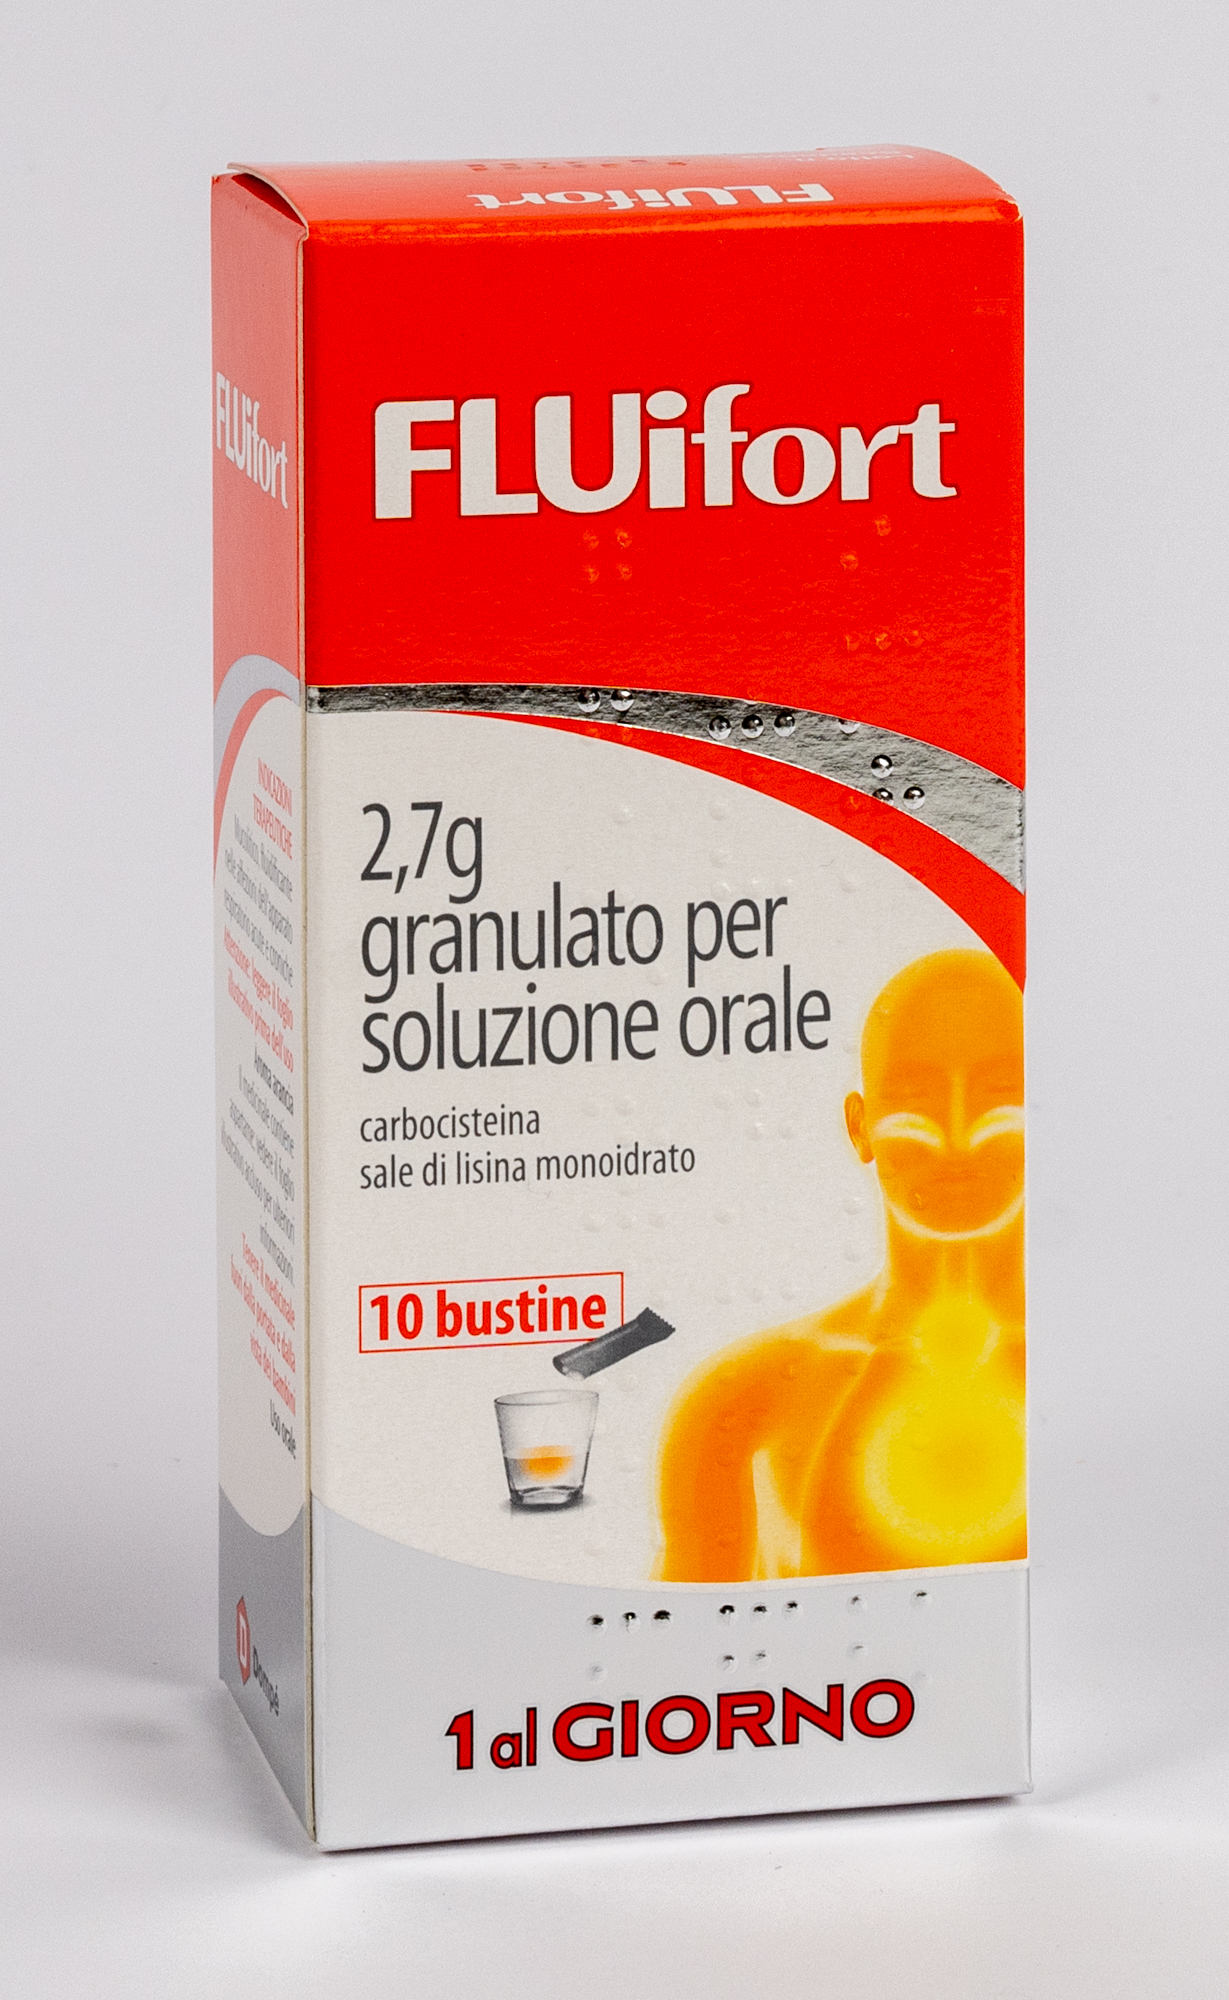 Fluifort 2,7 g granulato per soluzione orale